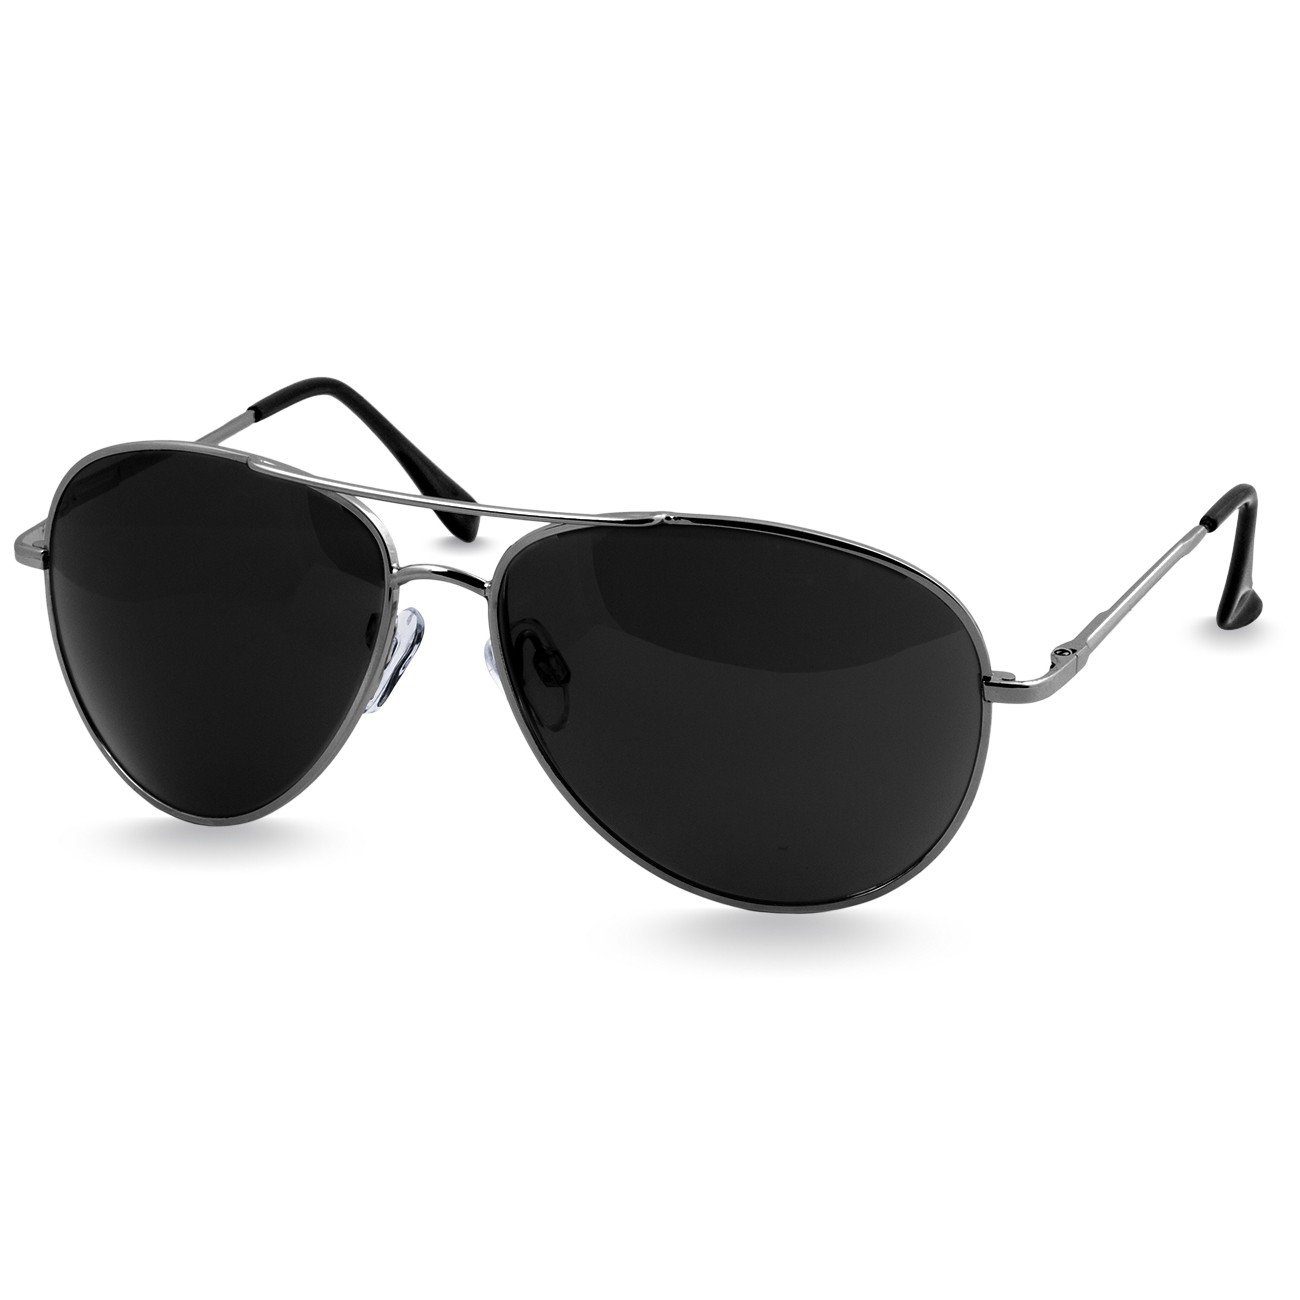 Caspar Sonnenbrille Pilotenbrille SG013 klassische Retro Unisex schwarz / silber